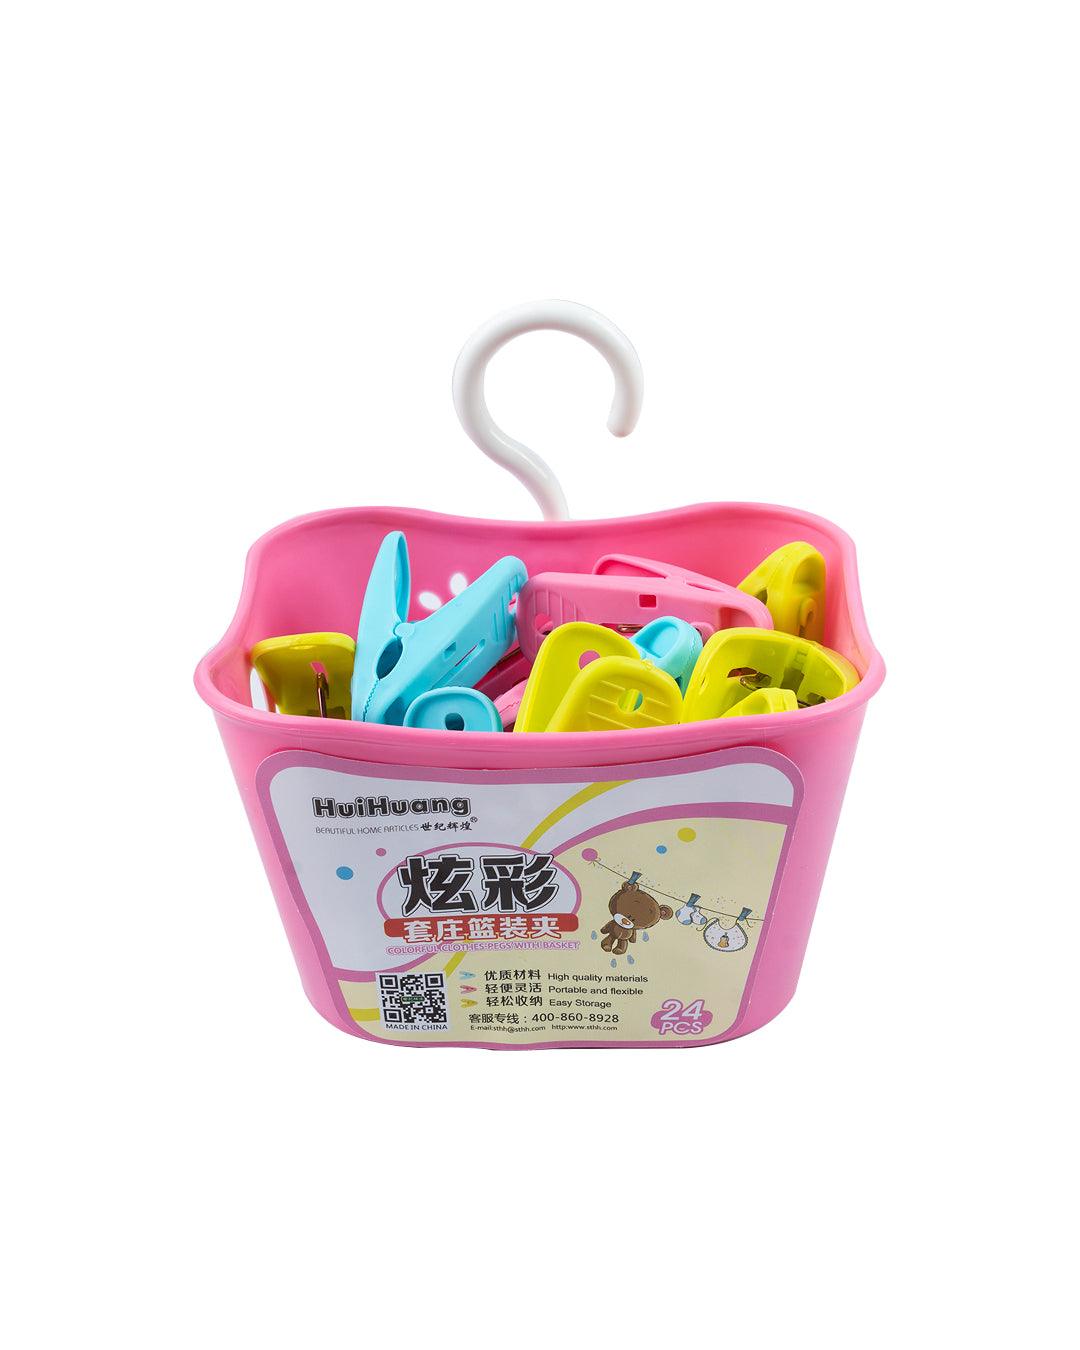 Cloth Clips with Basket Set, 24 Clips & Basket, Pink, Plastic - MARKET 99